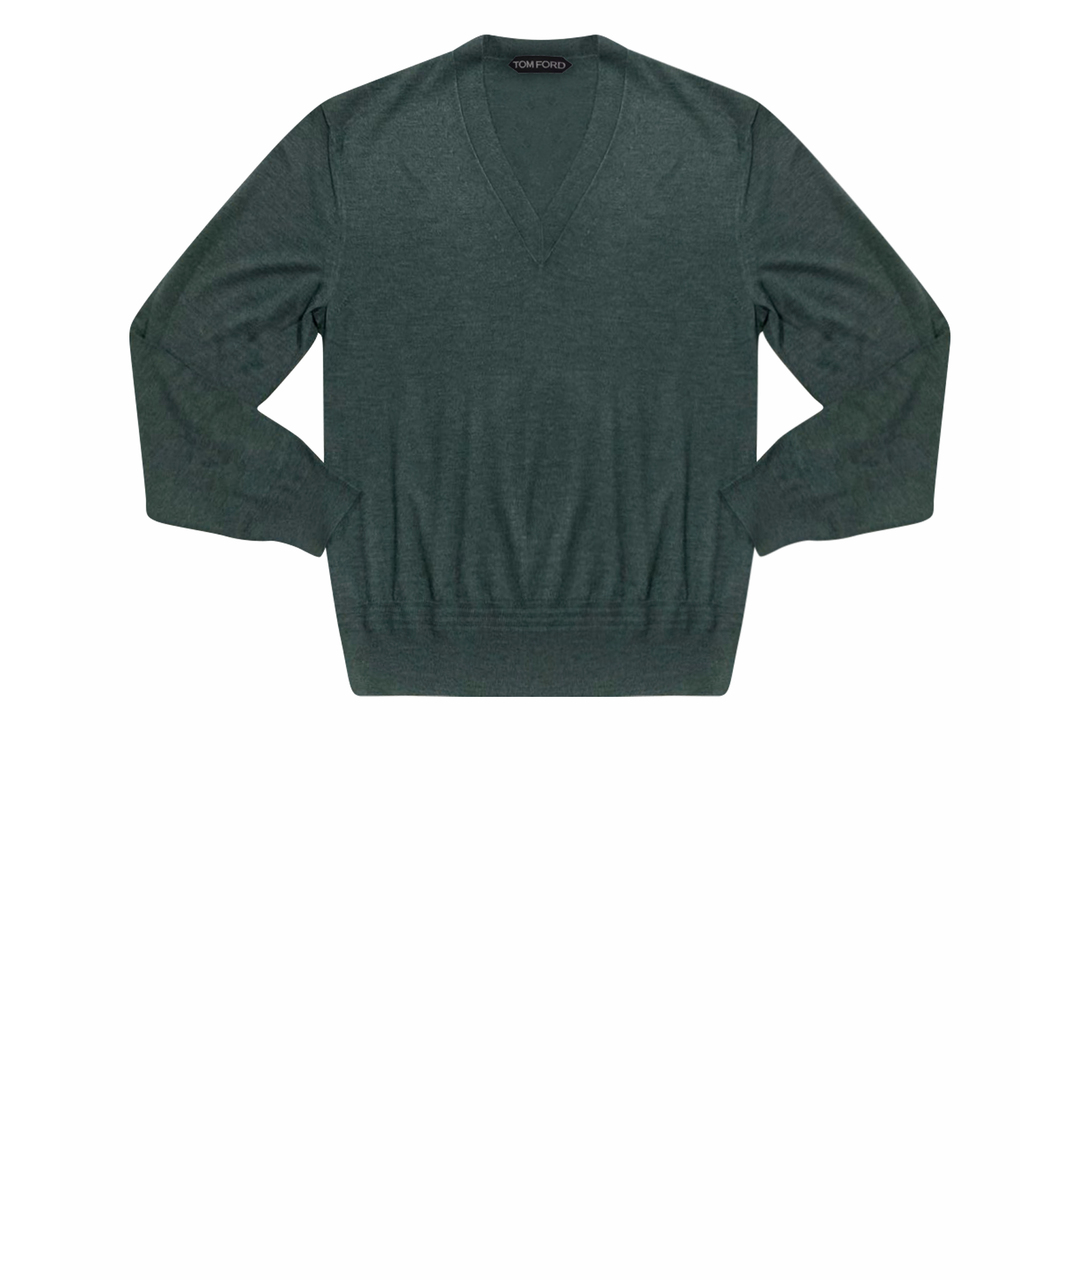 TOM FORD Зеленый кашемировый джемпер / свитер, фото 1